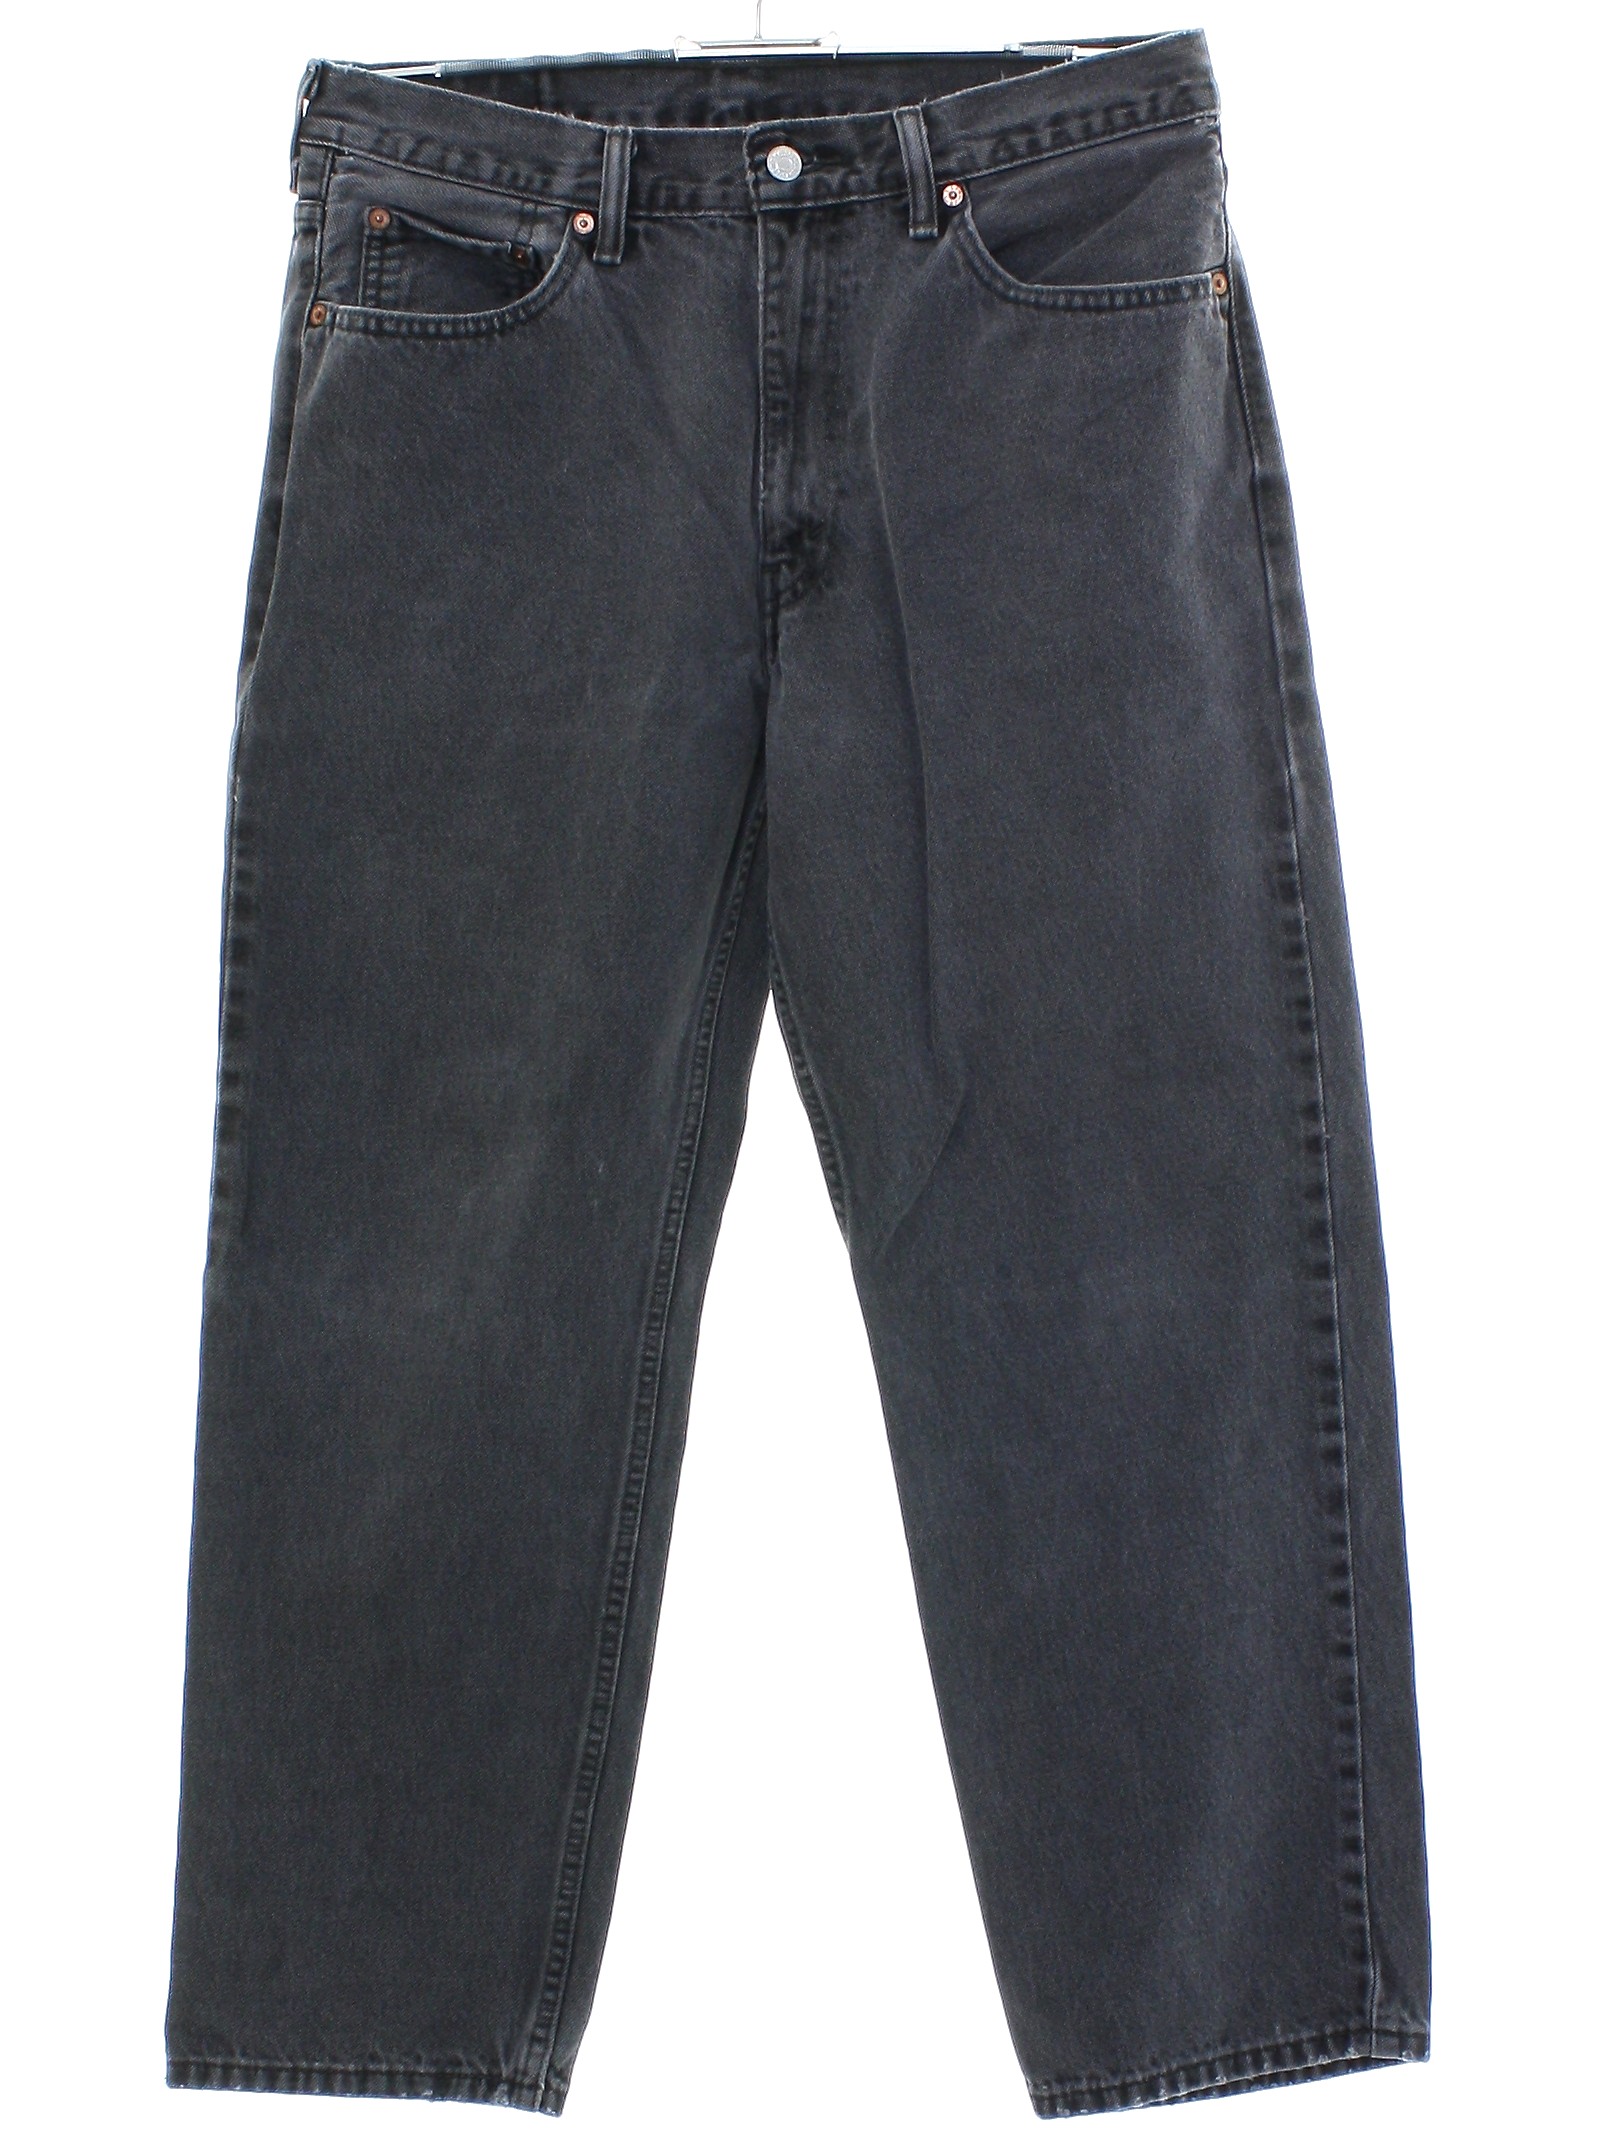 Pants: 90s -Levis 550- Mens faded dark gray cotton denim jeans pants ...